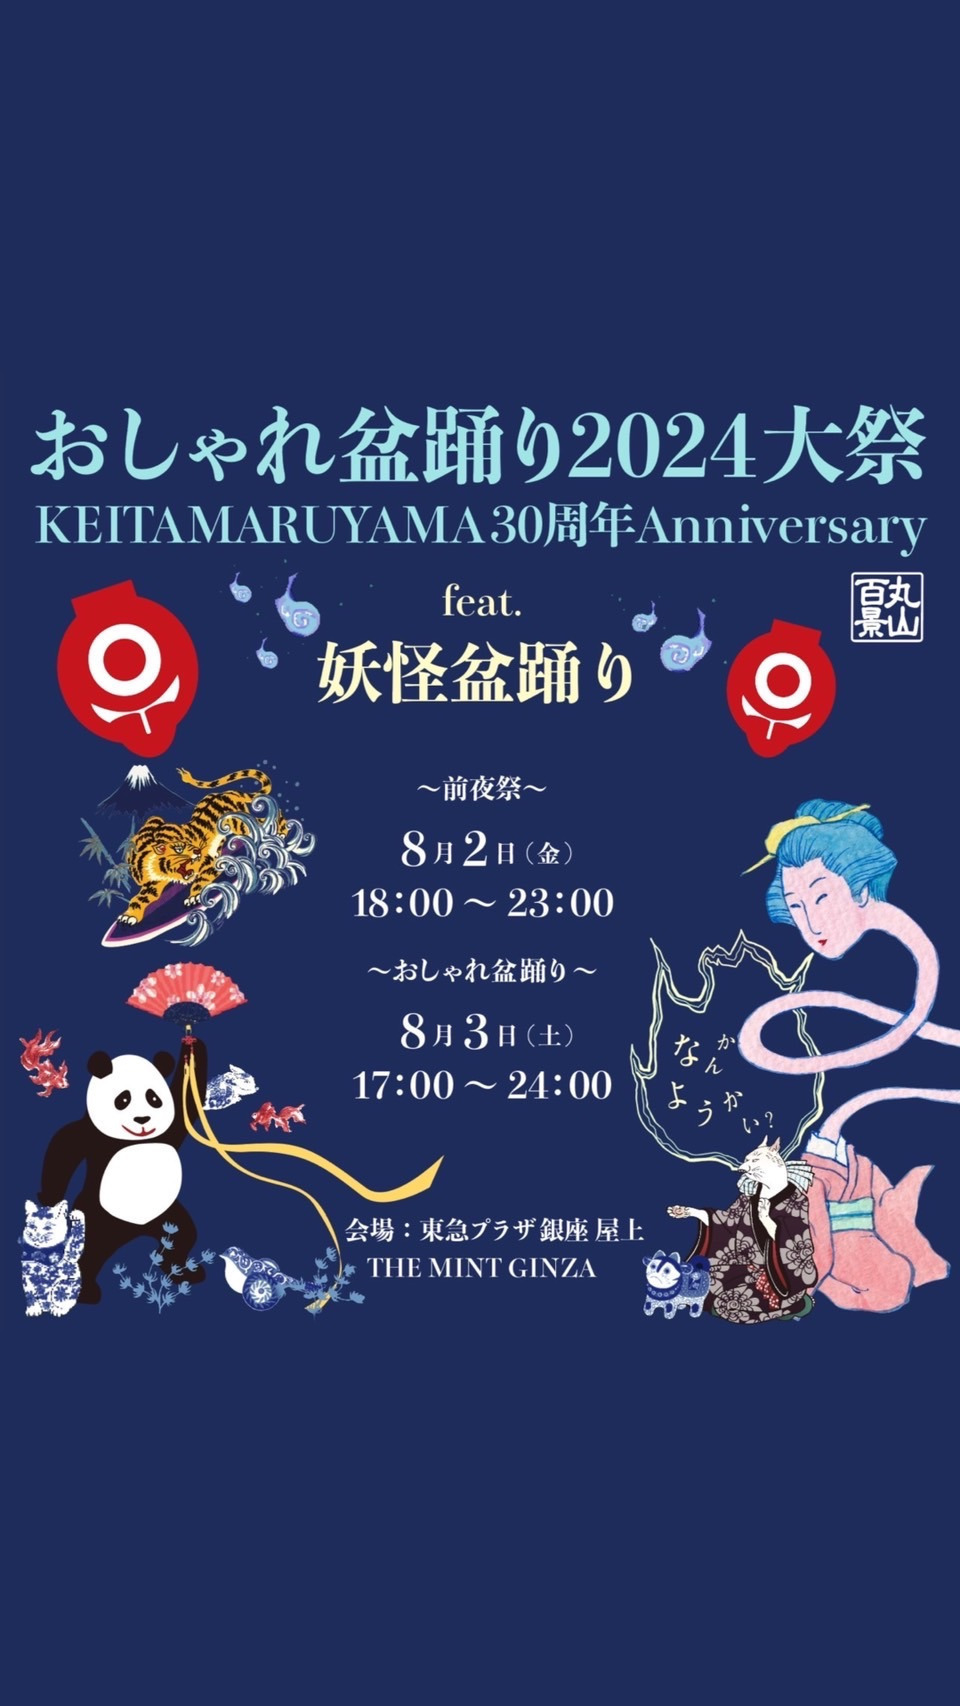 【おしゃれ盆踊り】KEITA MARUYAMA30周年を記念して盛大に開催！